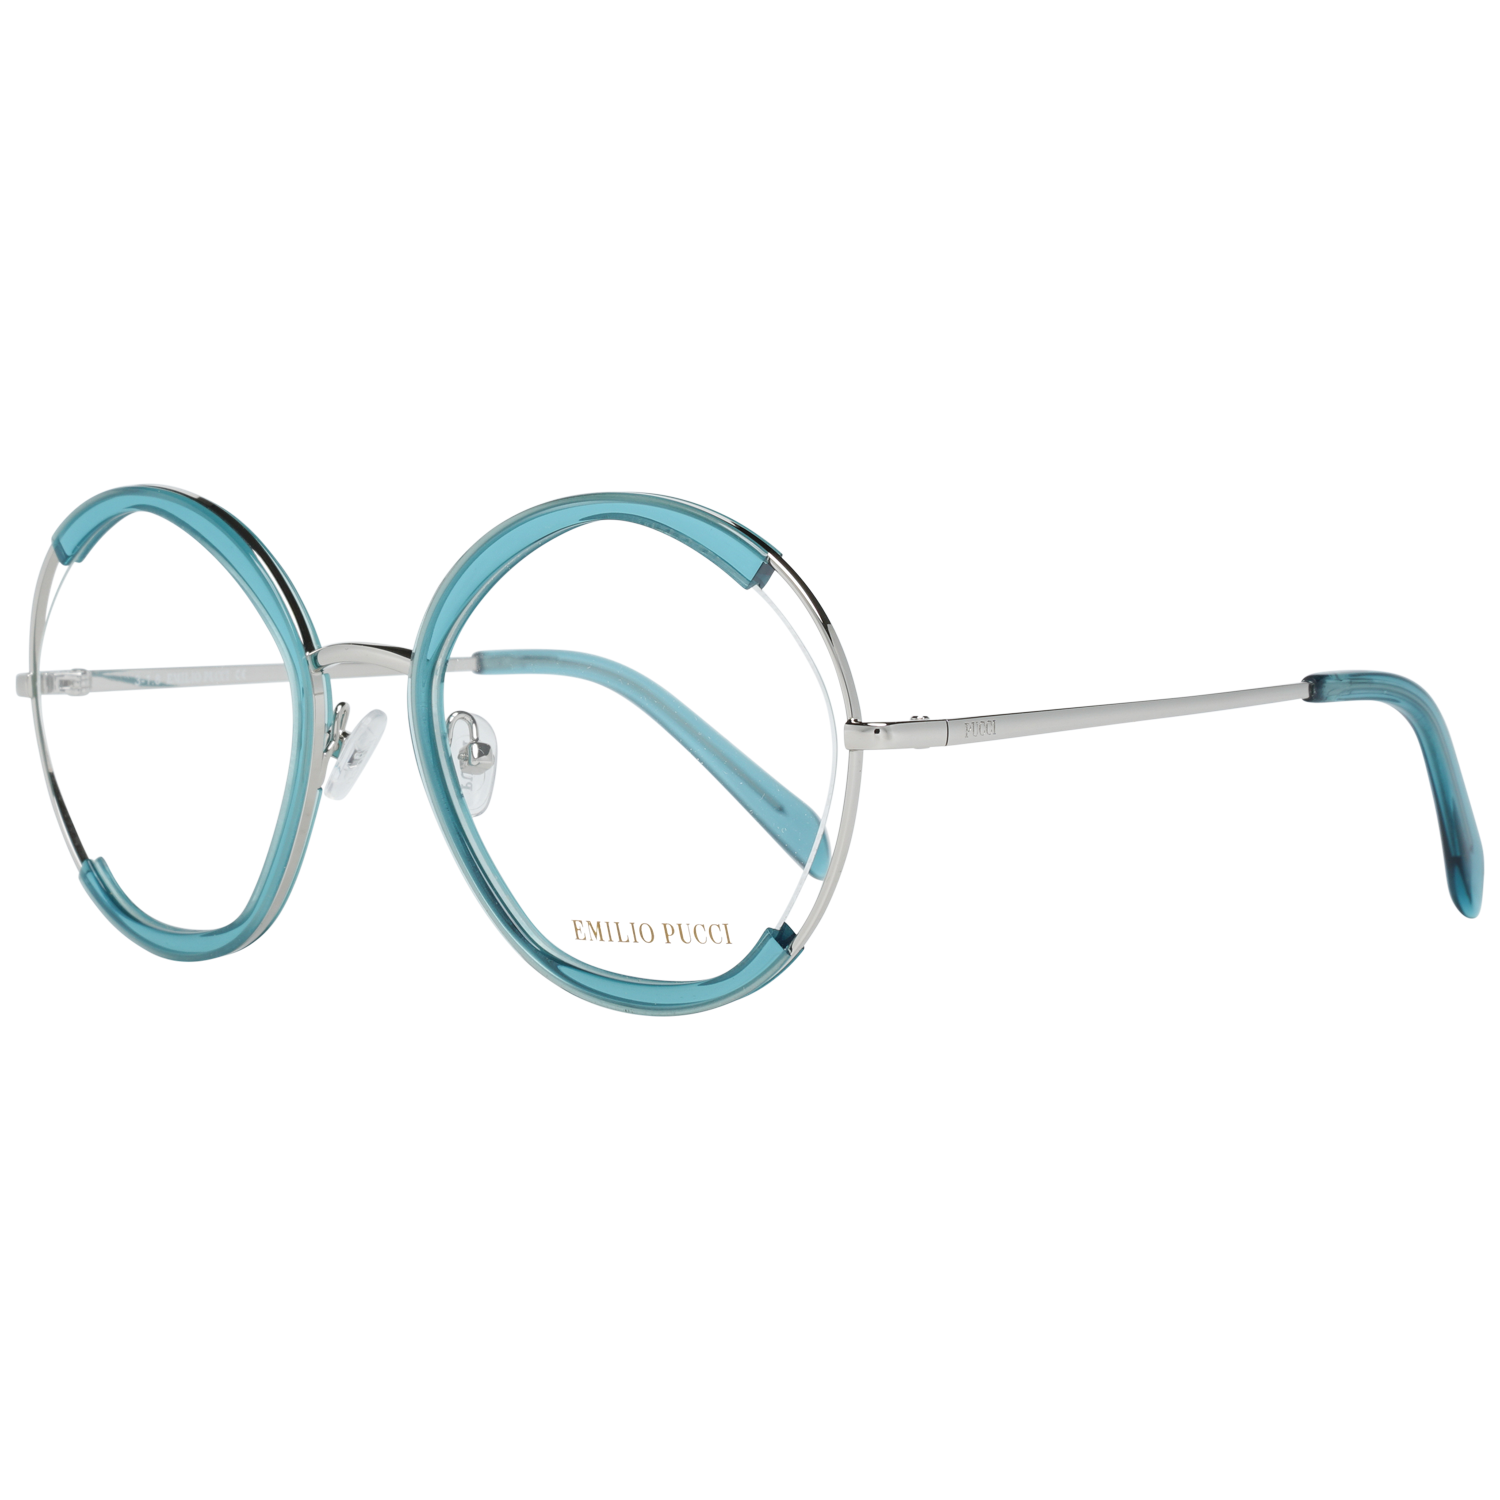 Emilio Pucci Frames Emilio Pucci Optical Frame EP5089 089 54 Eyeglasses Eyewear UK USA Australia 